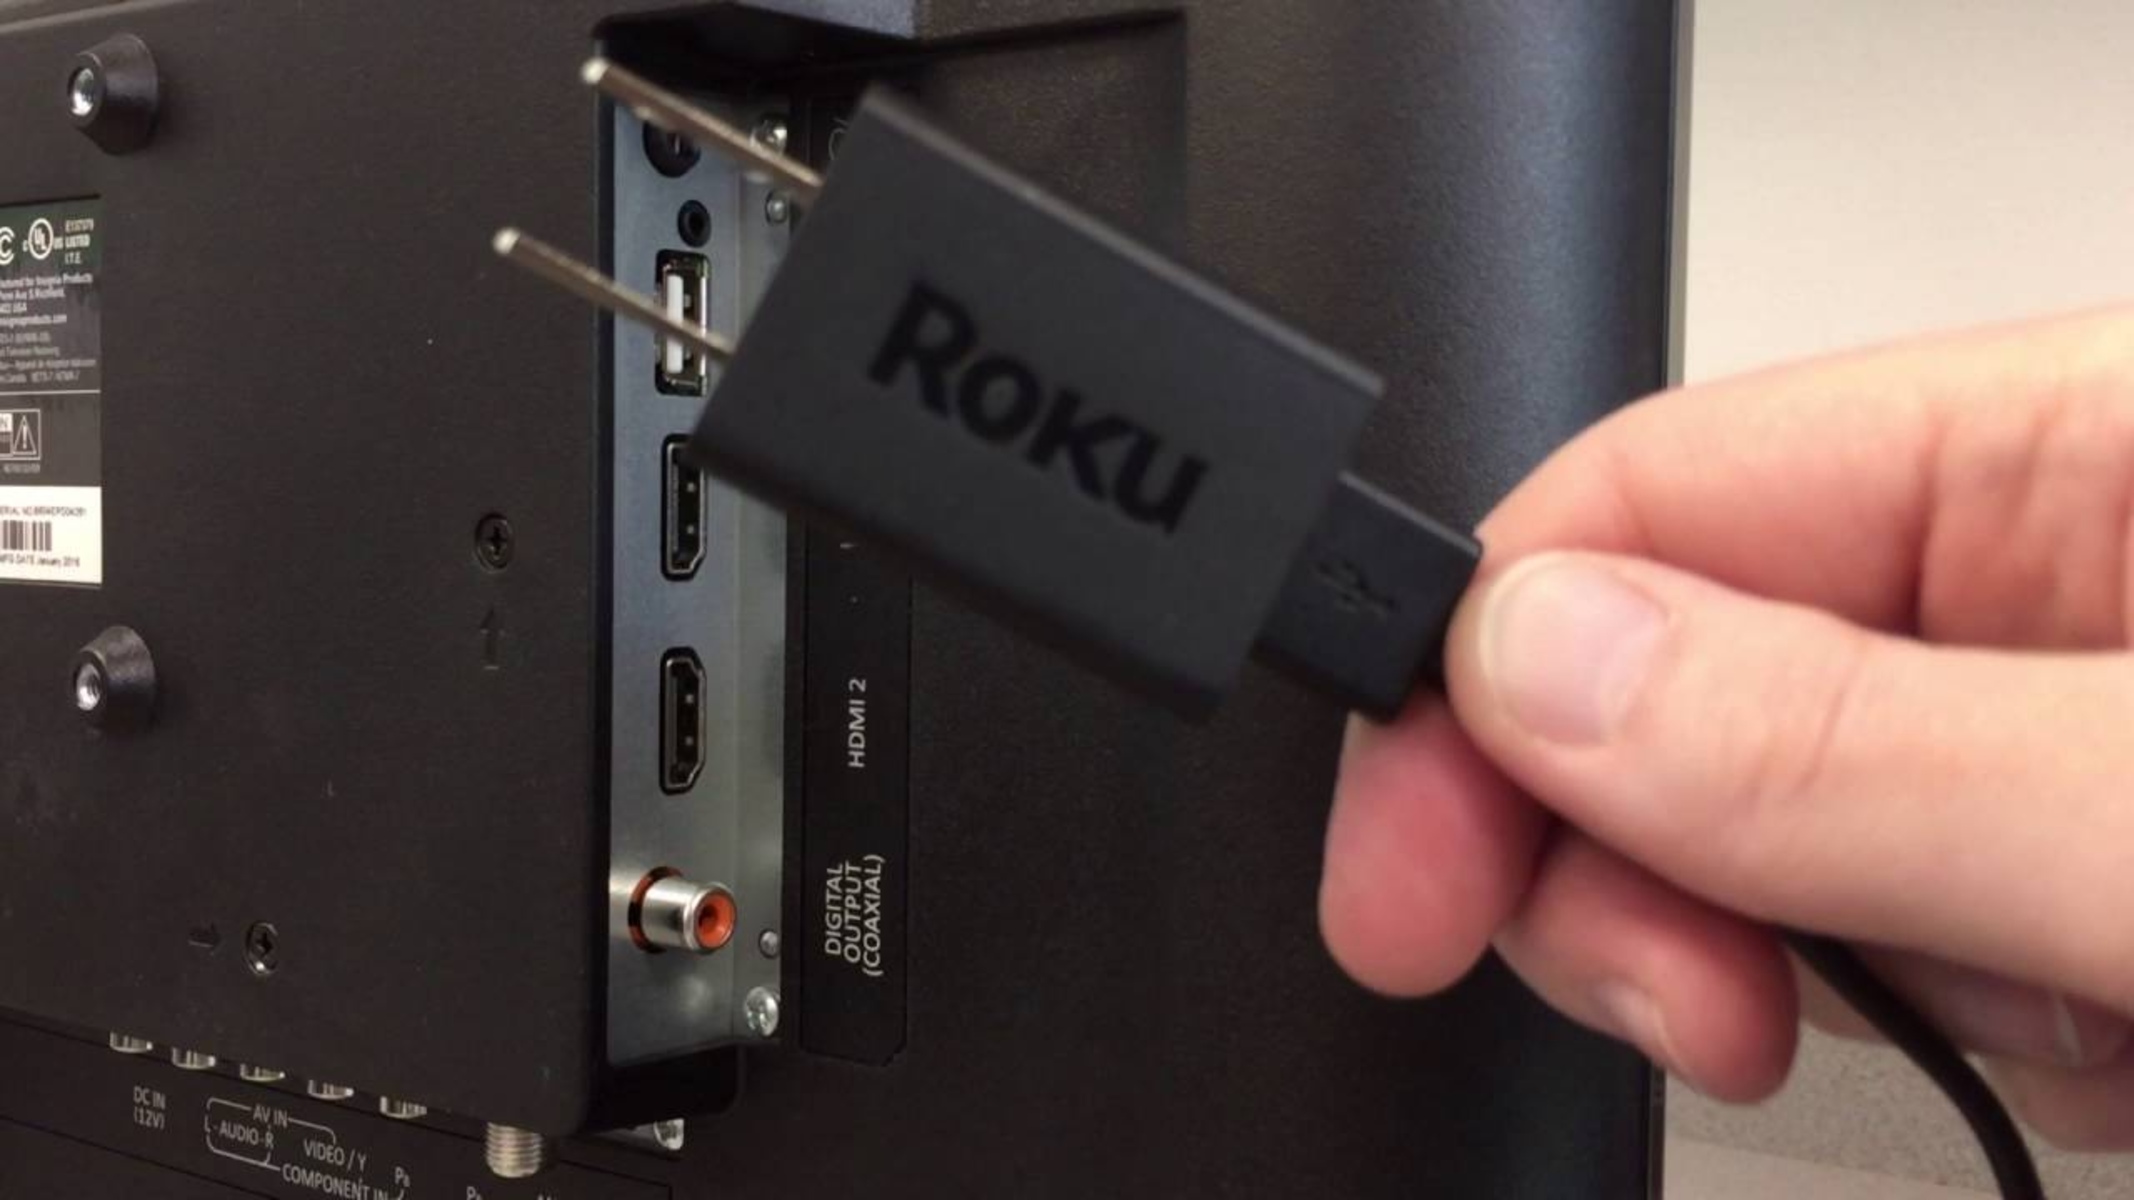 How To Set Up Roku HDMI?